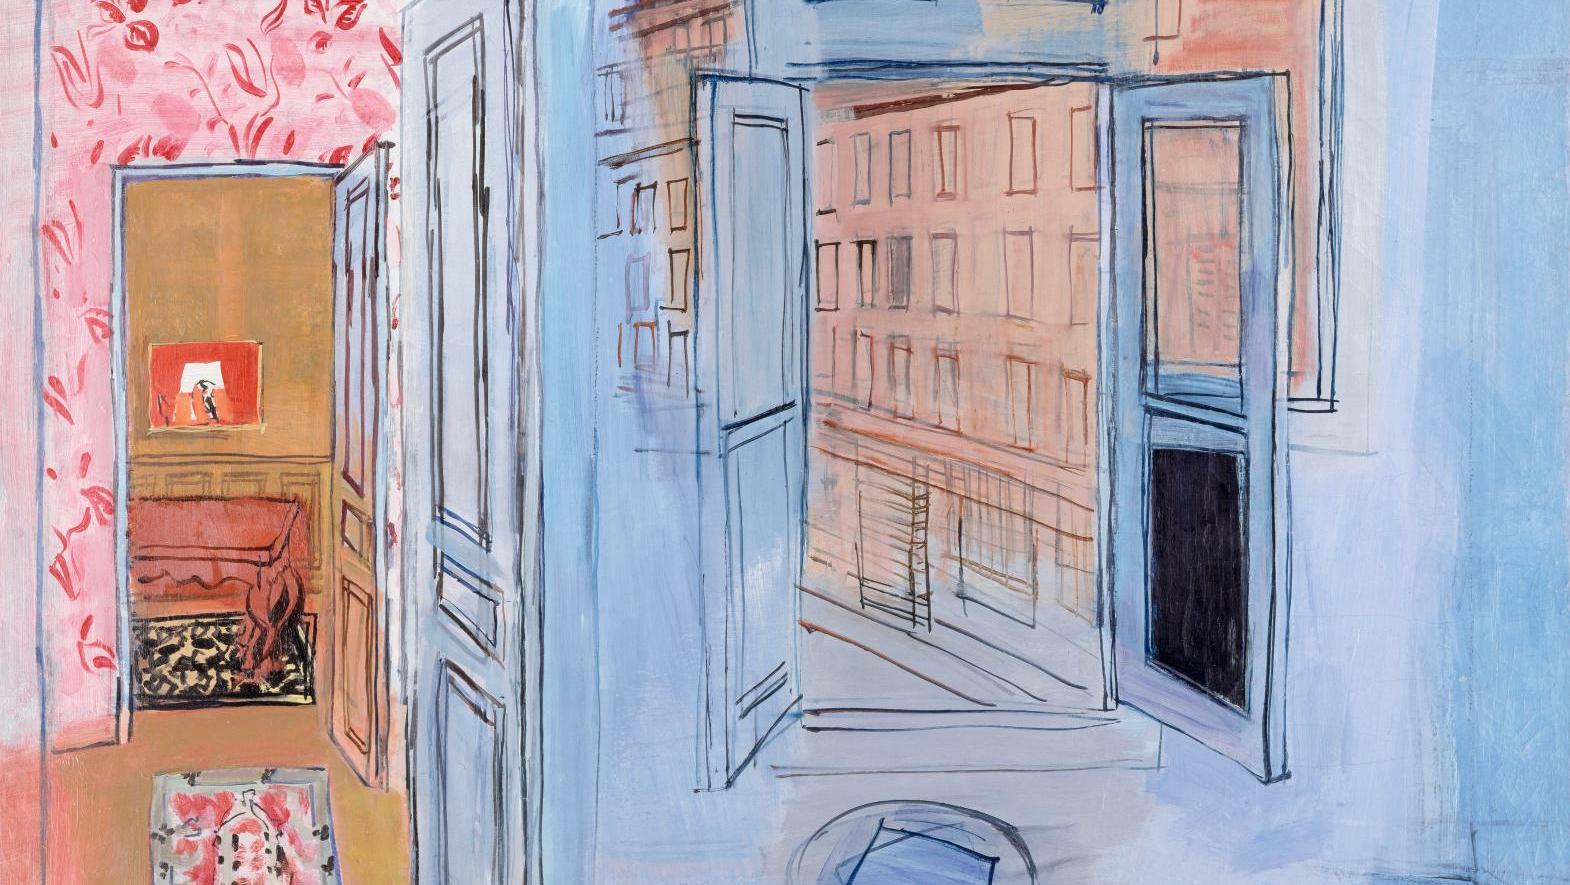 Raoul Dufy, L’Atelier de l’impasse Guelma, 1935-1952, huile sur toile, 89 x 117 cm,... Le Paris de Dufy